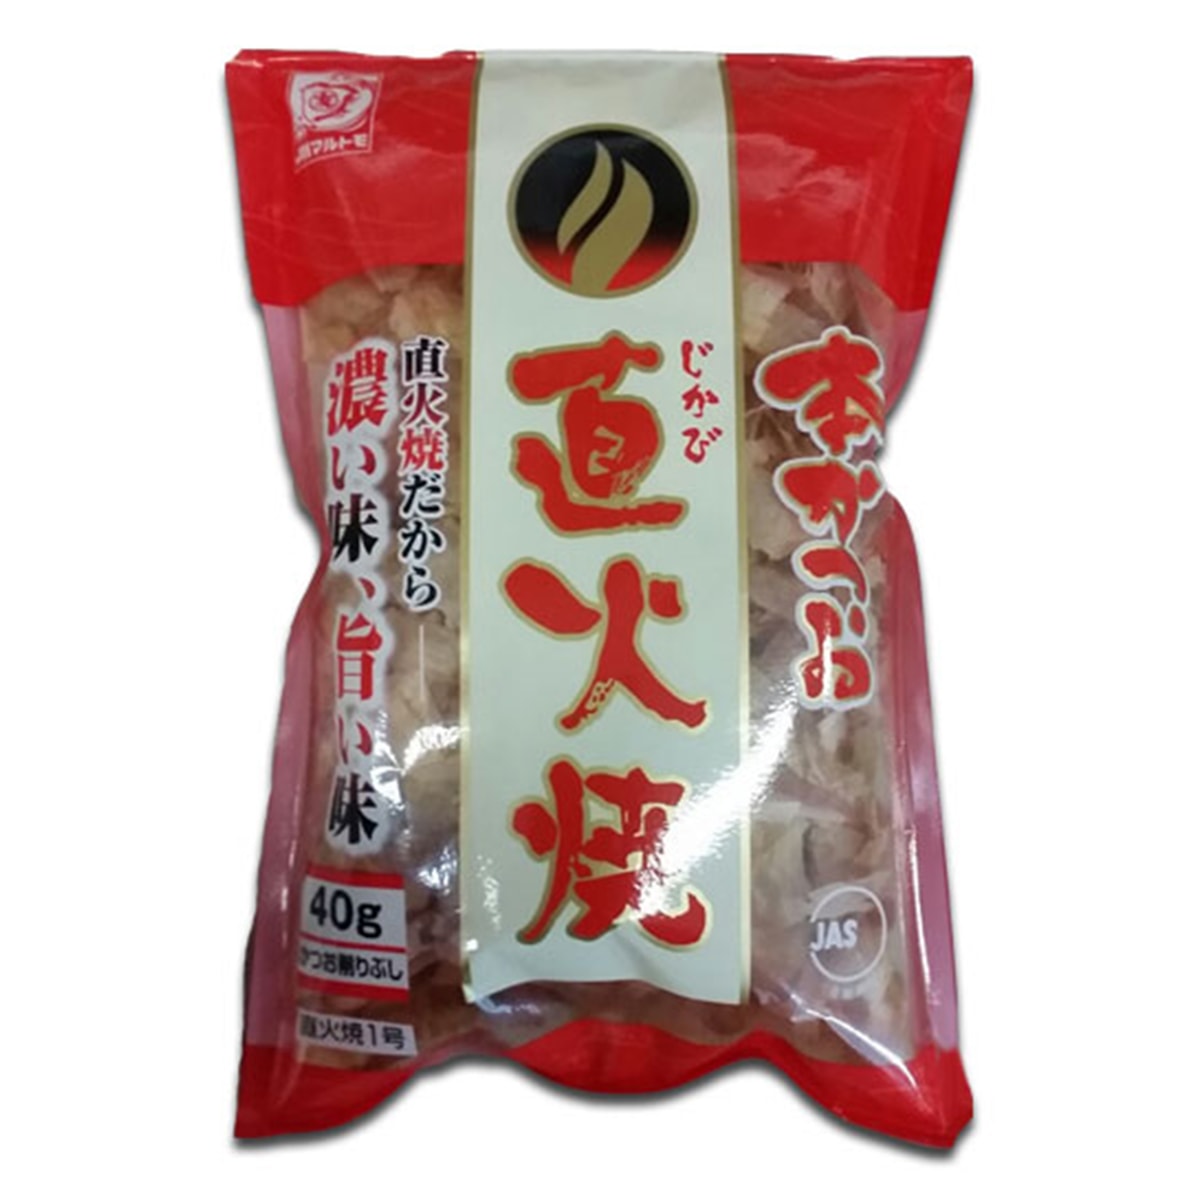 Buy Katsuobushi Dried and Smoked Bonito Flakes - 40 gm